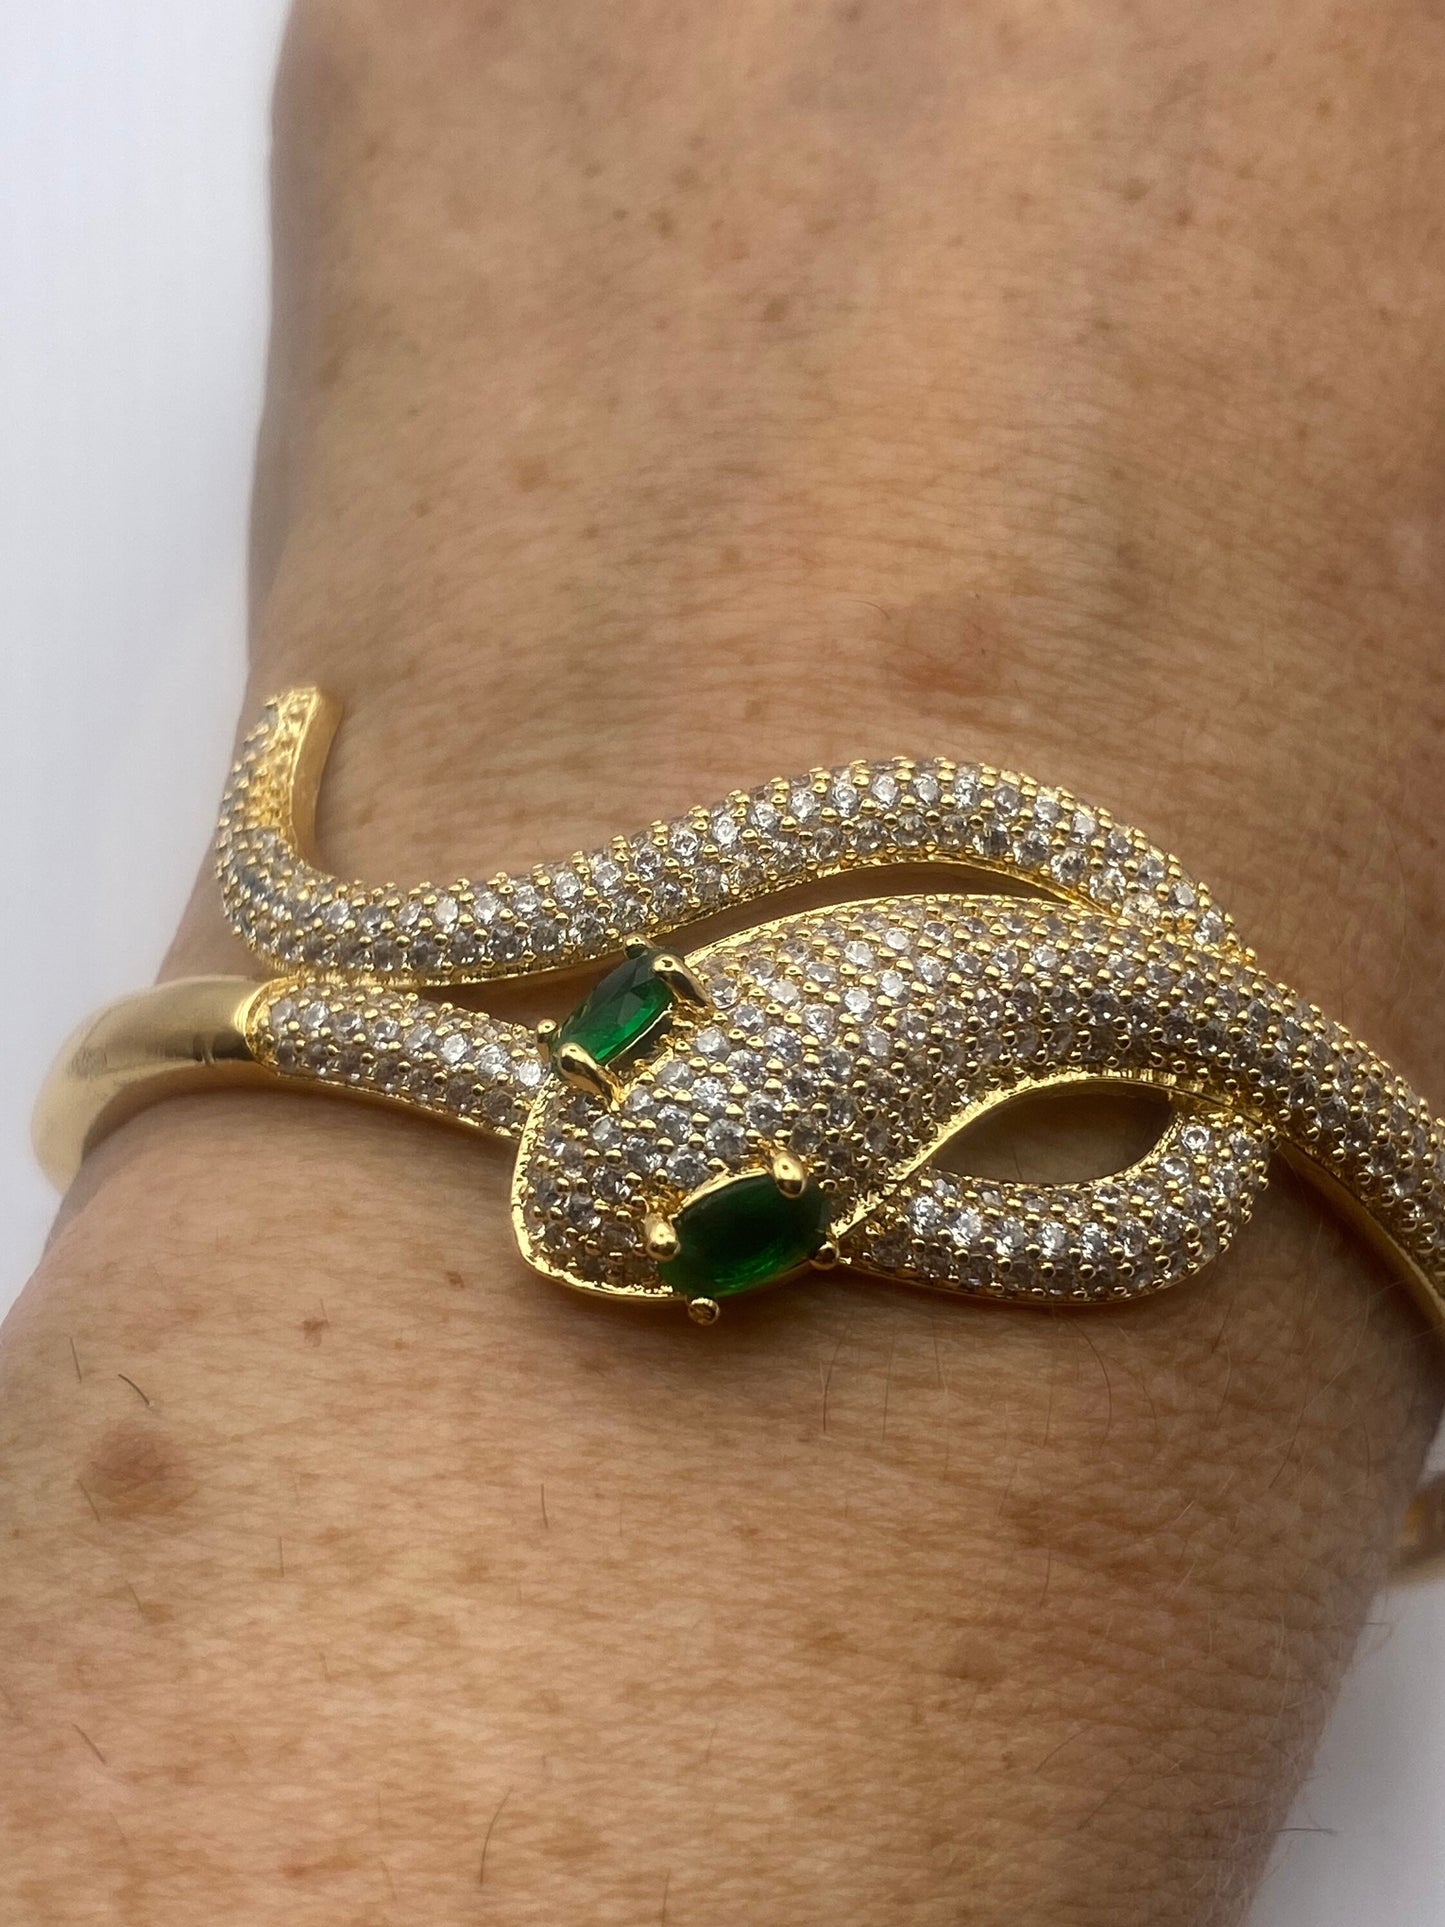 Vintage Snake Bangle Bracelet Gold filled Green Crystal Eyes